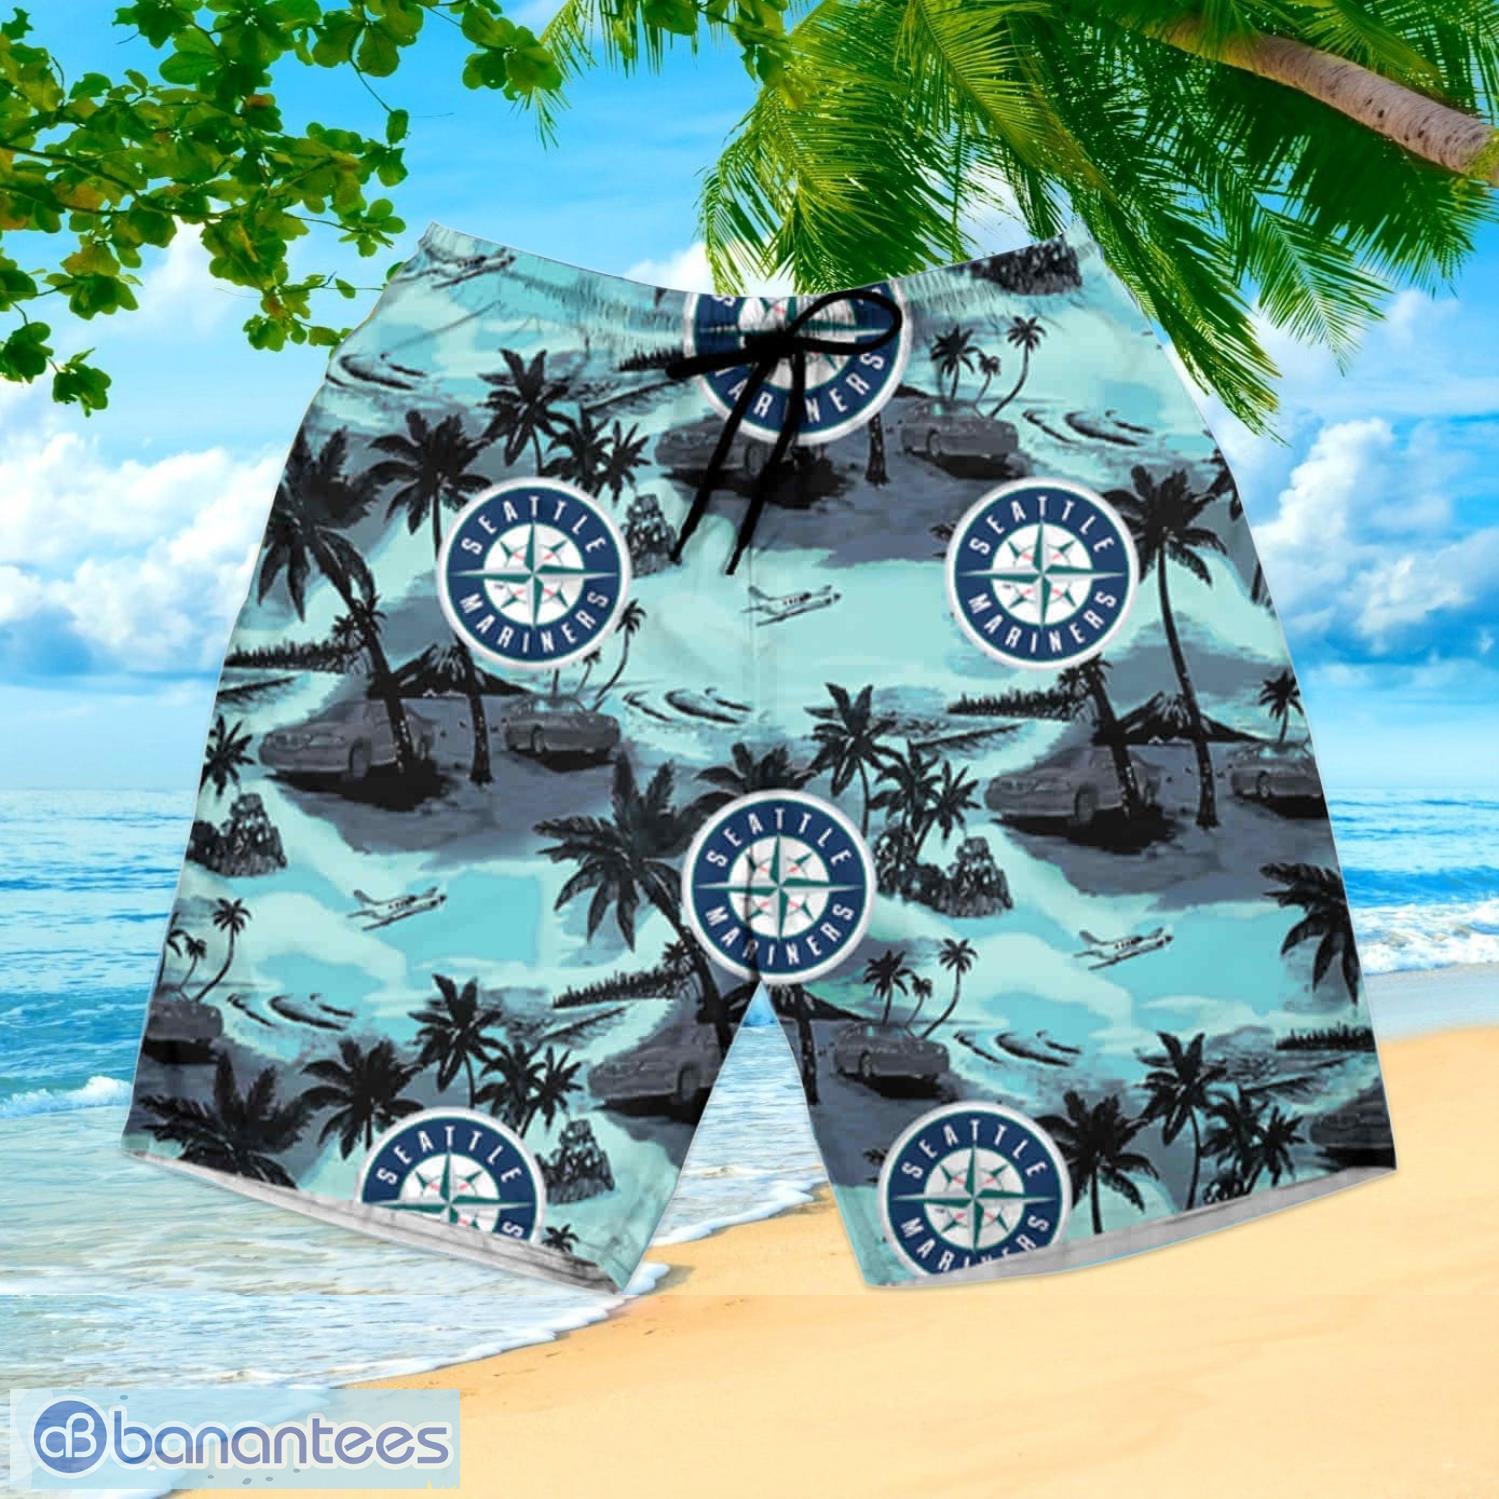 Seattle Mariners Mlb Summer Hawaiian Shirt And Shorts - Banantees